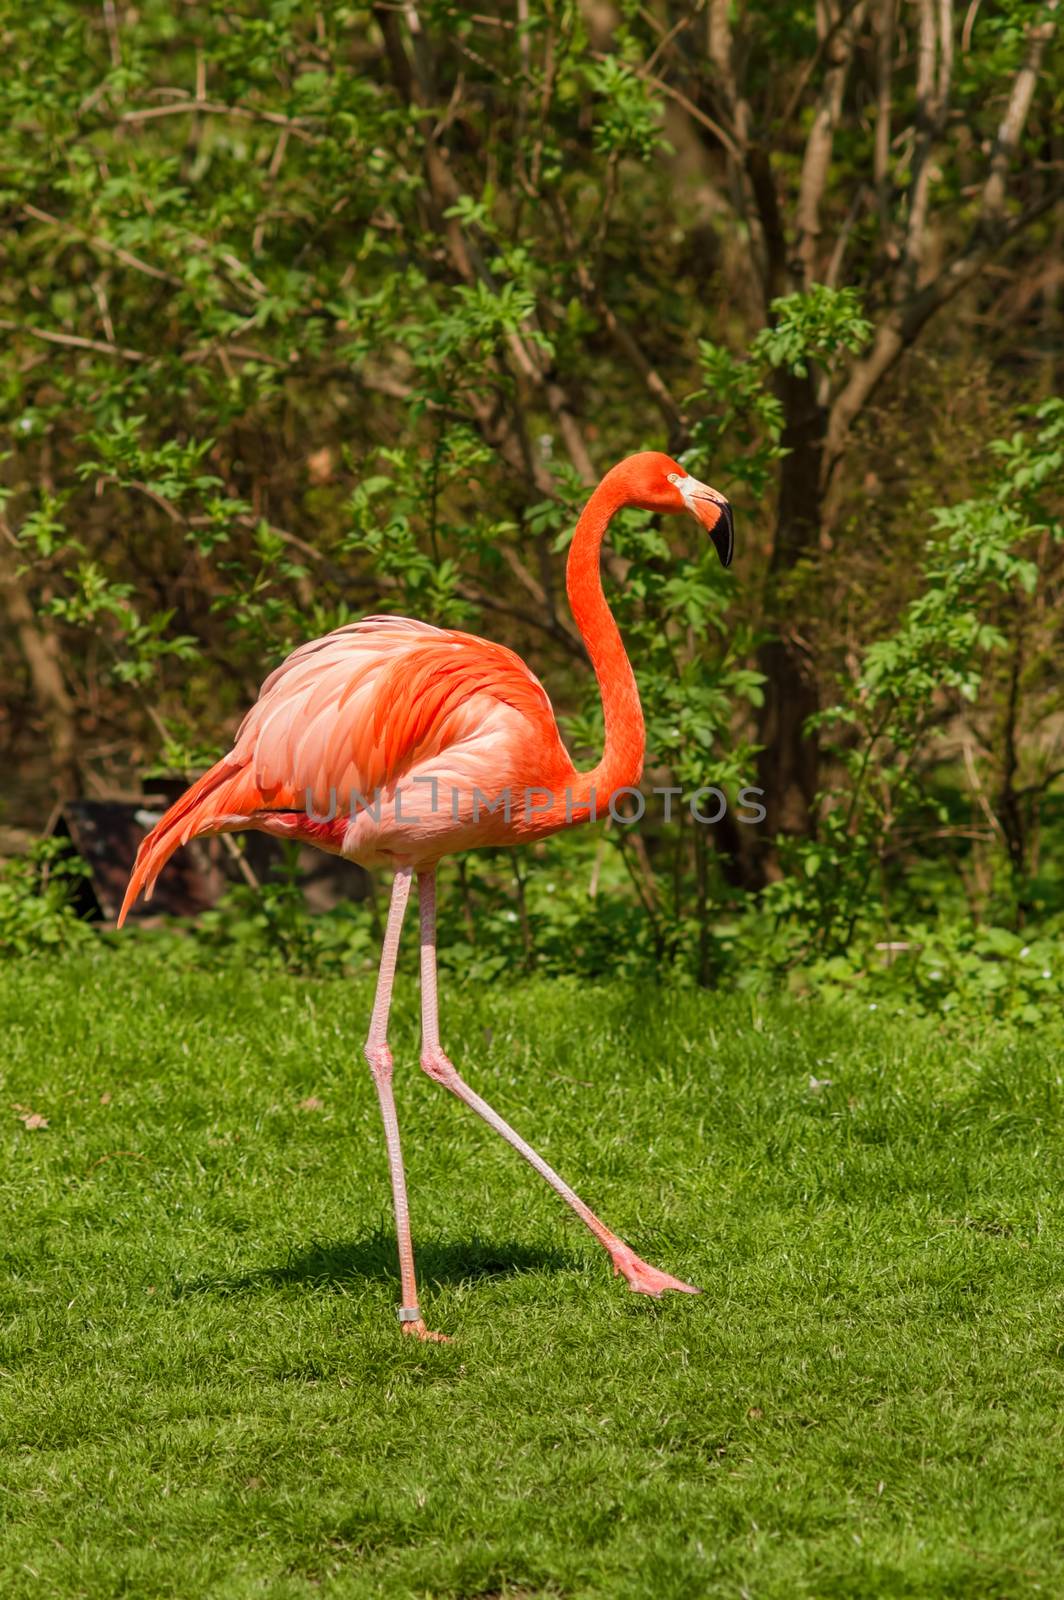 Red caribbean flamingo dancing by vkstudio